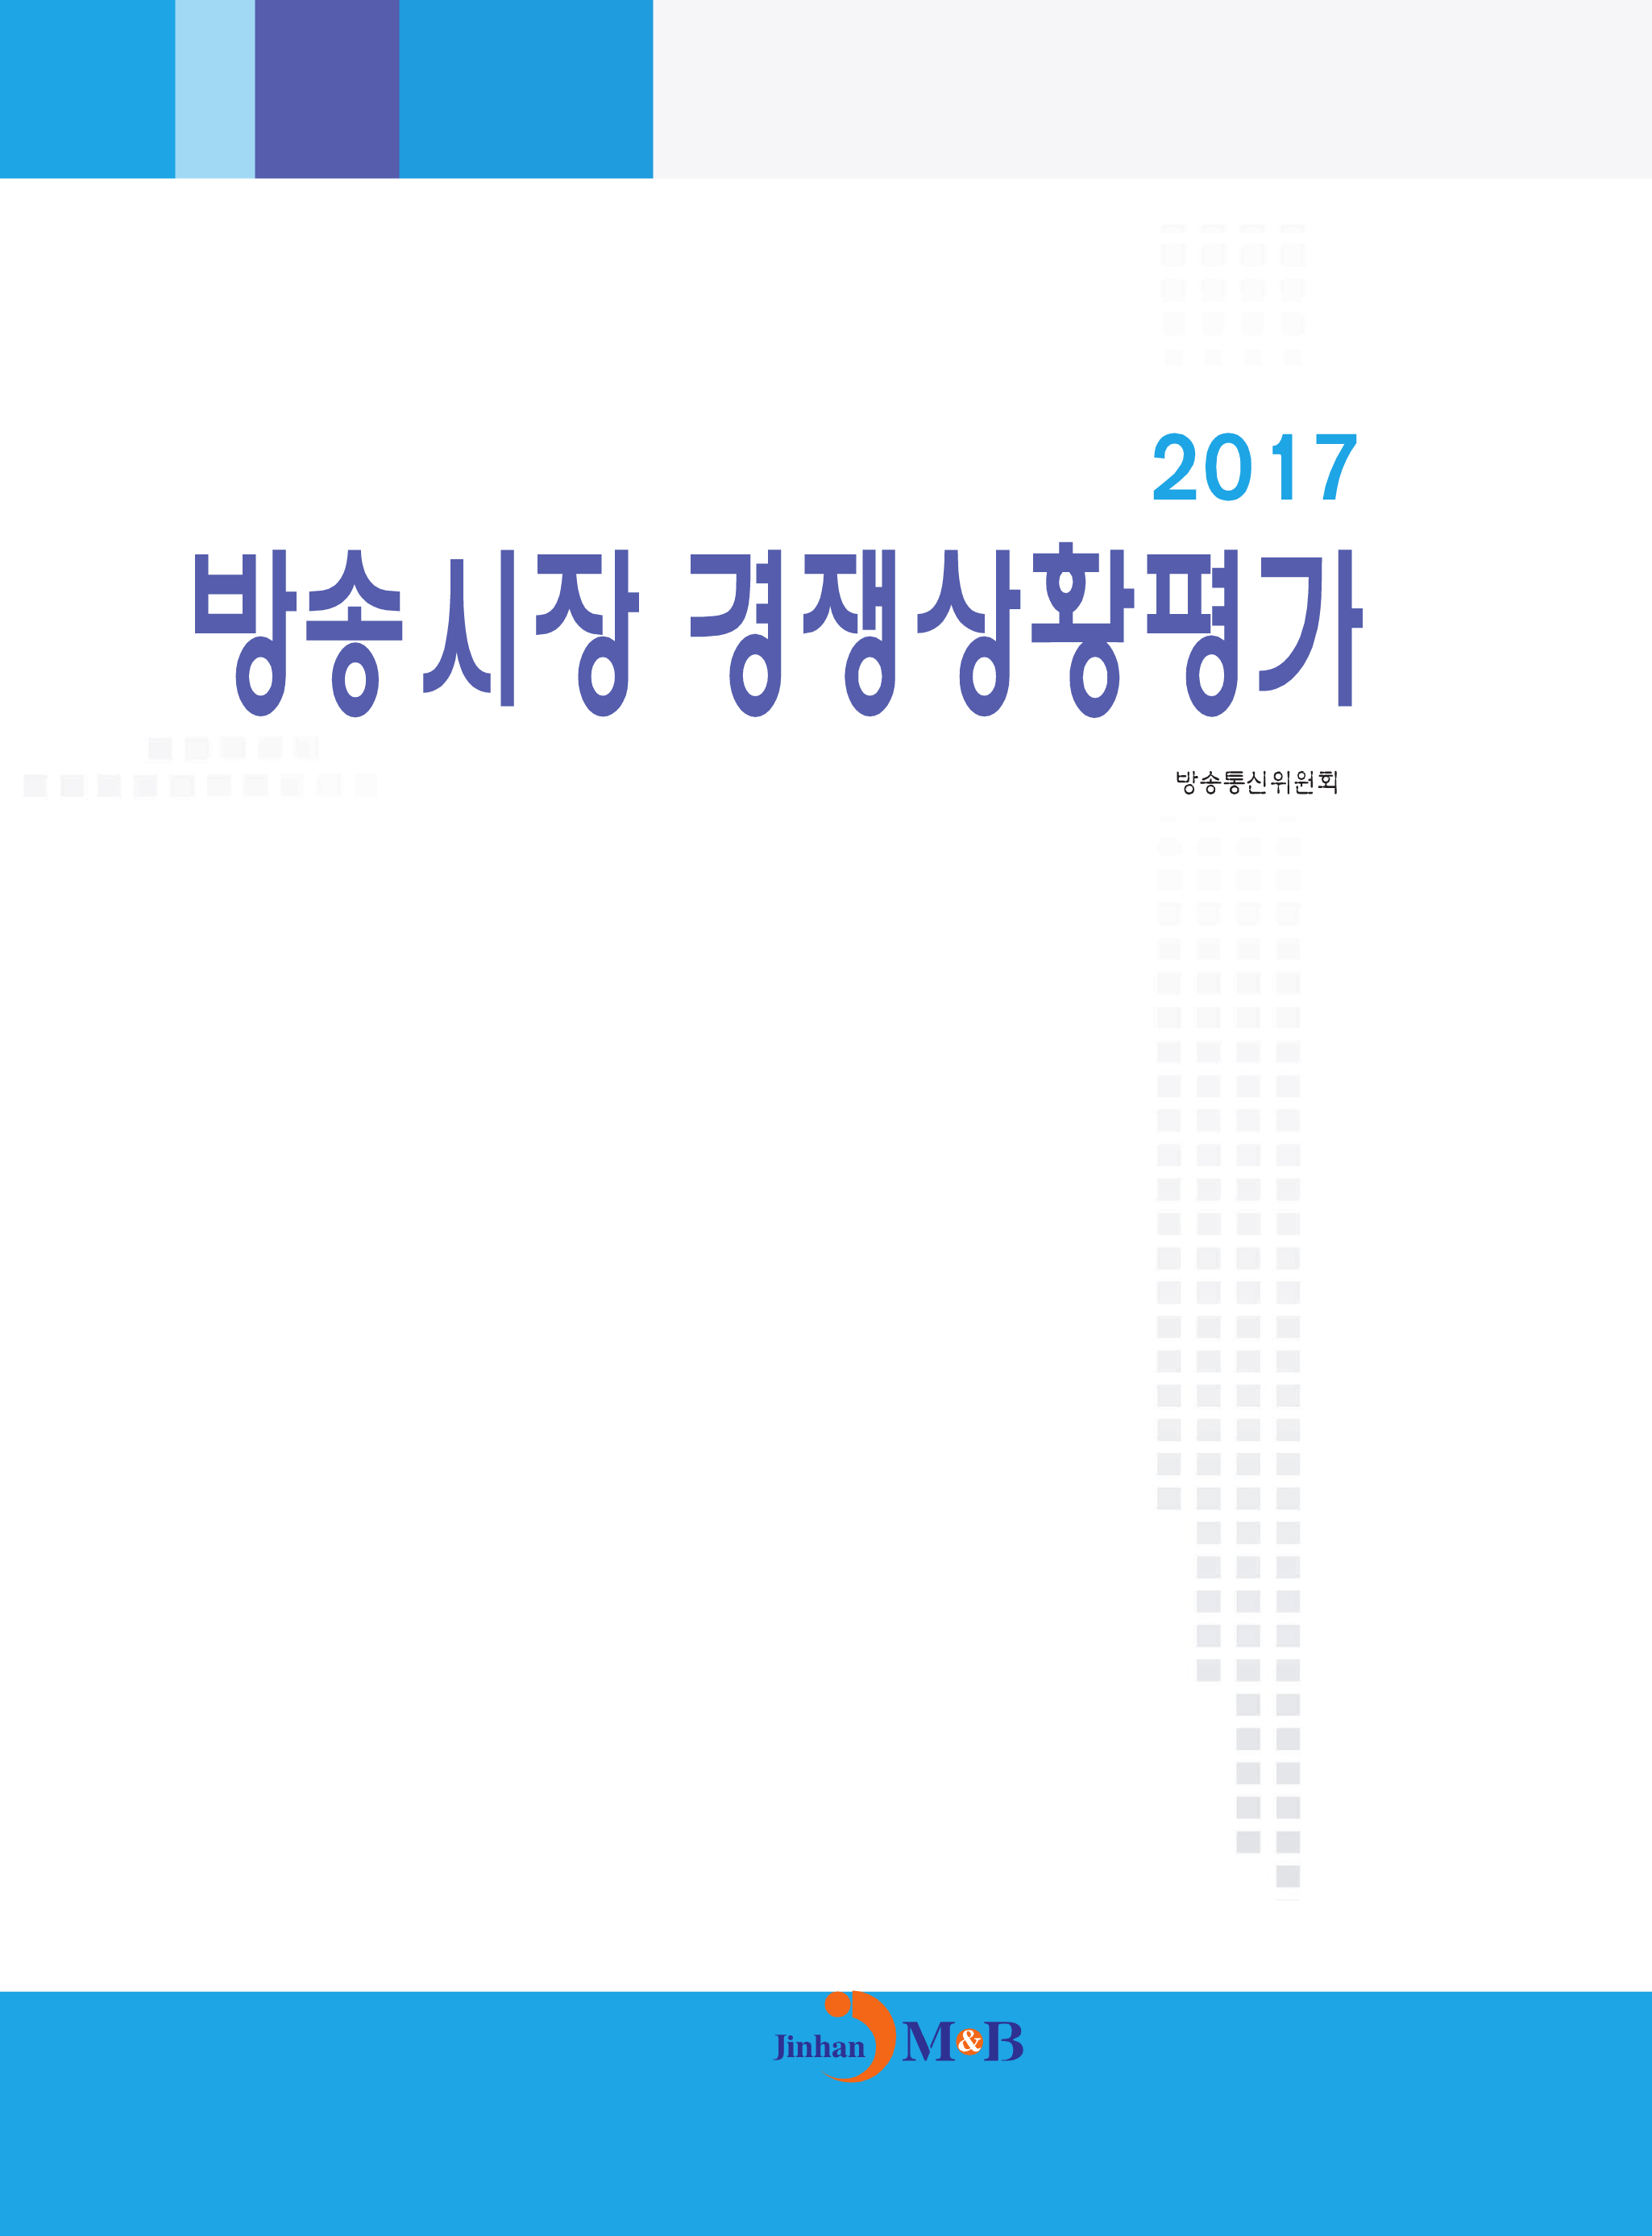 방송시장 경쟁상황평가(2017)